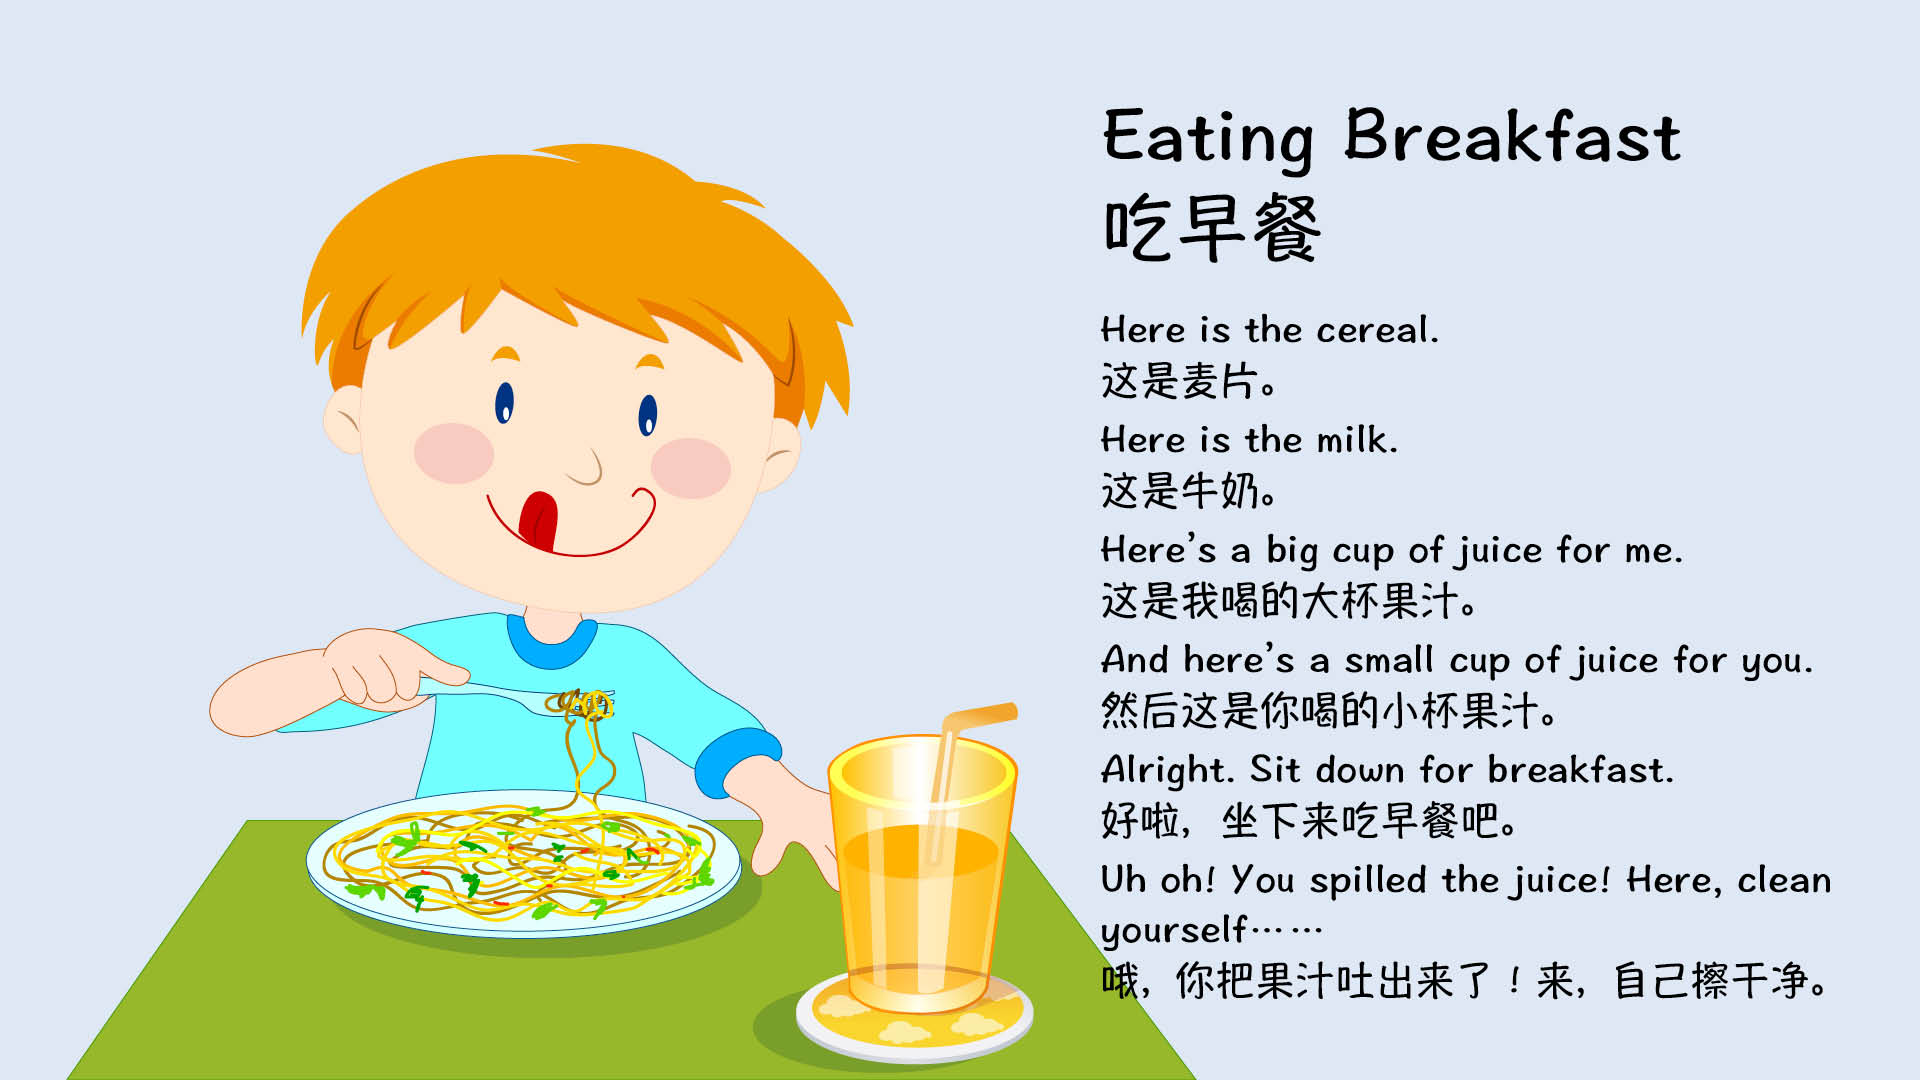 早餐提供宝宝营养和能量英语启蒙提供宝宝喜爱的语言环境